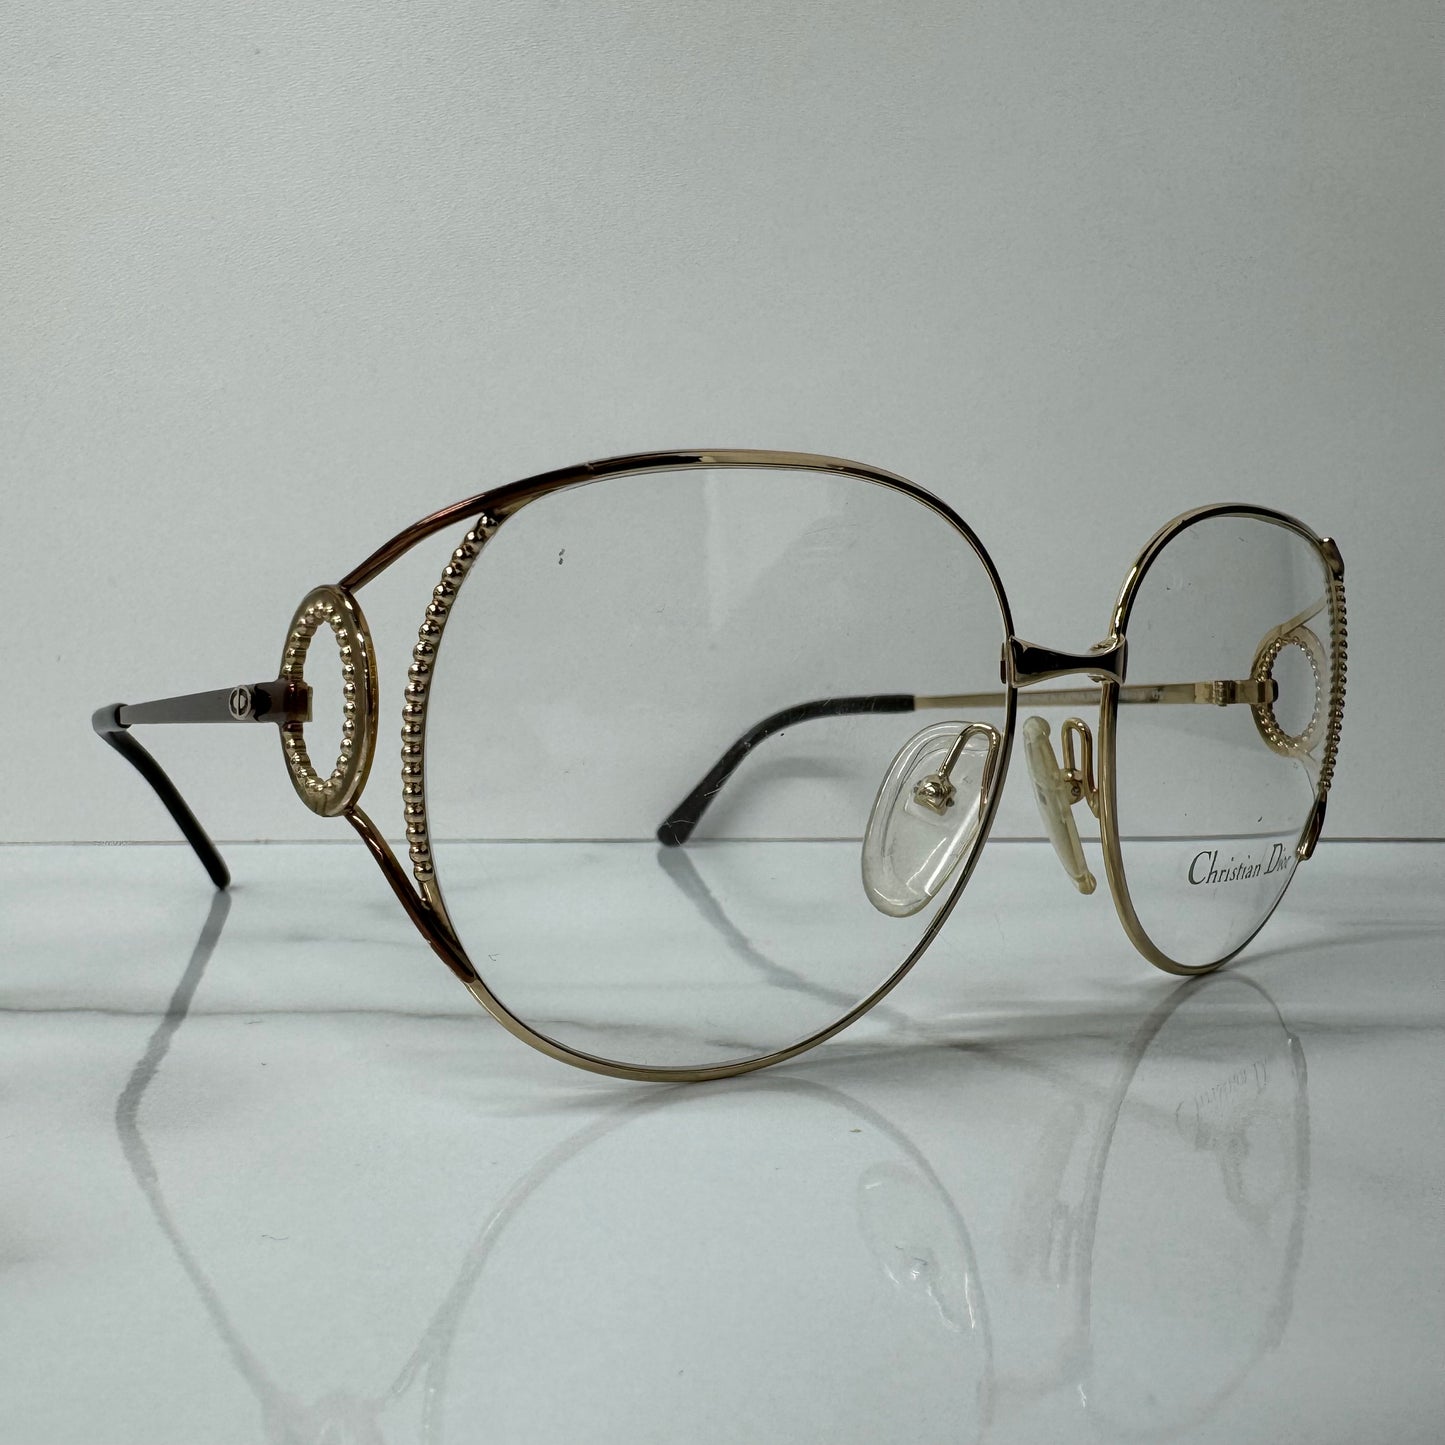 Vintage Christian Dior Glasses Frames - 2788 Gold & Brown Round Eyeglasses